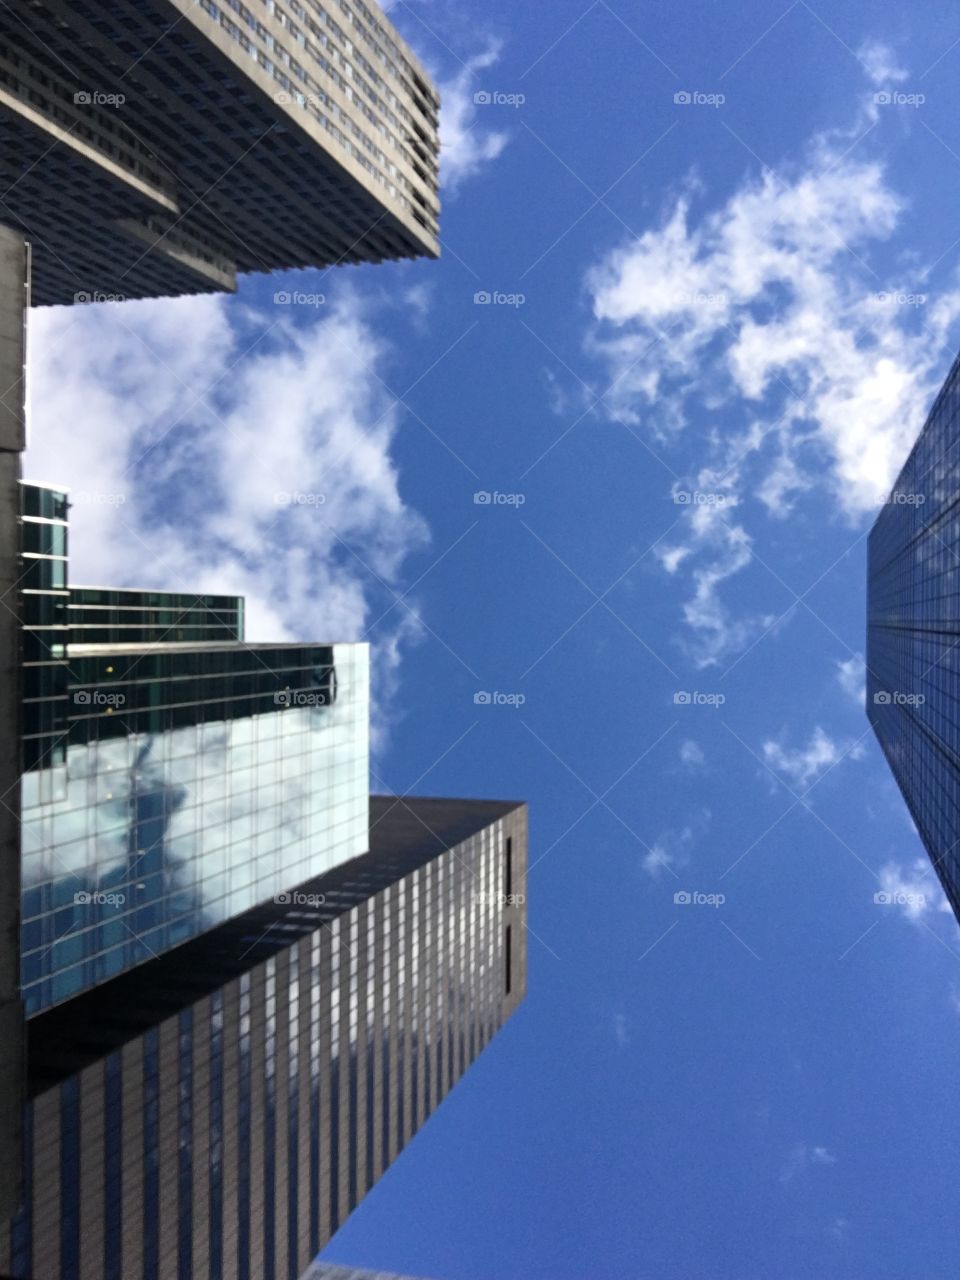 Skyscrapers/blue skies/NYC skies